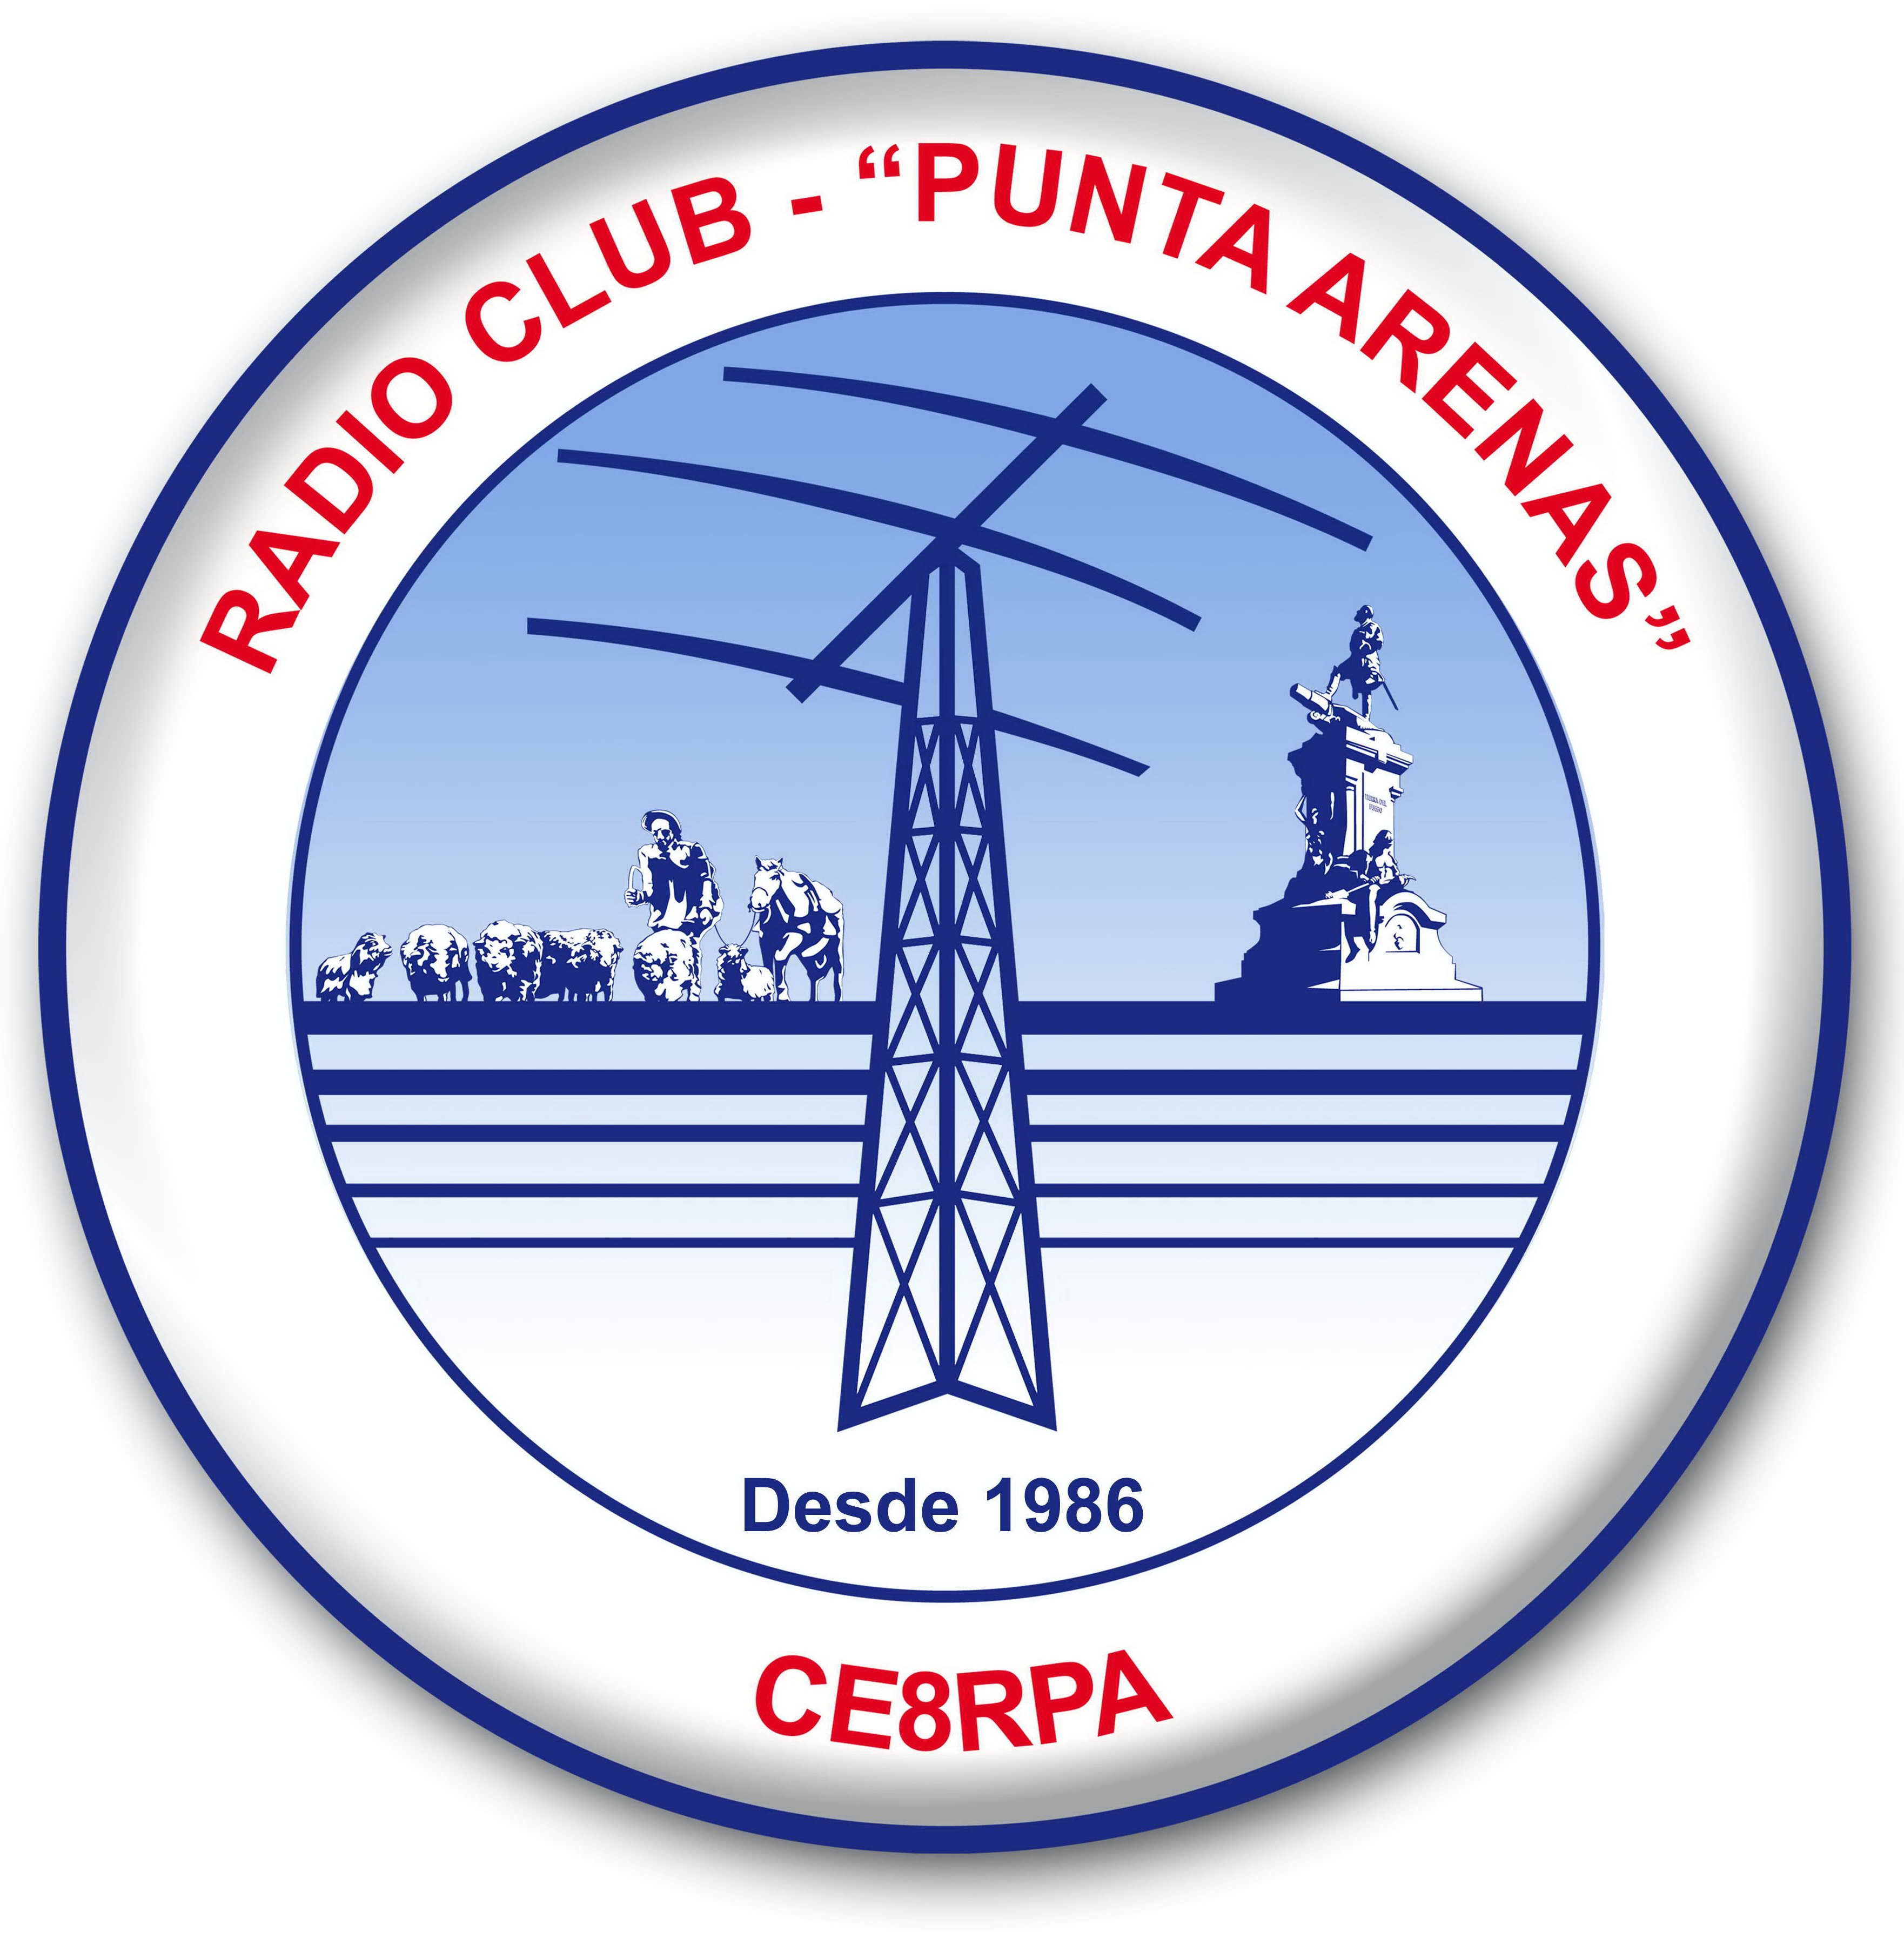 CASILLA DE CORRO 2000 - PUNTA ARENAS - CHILE 